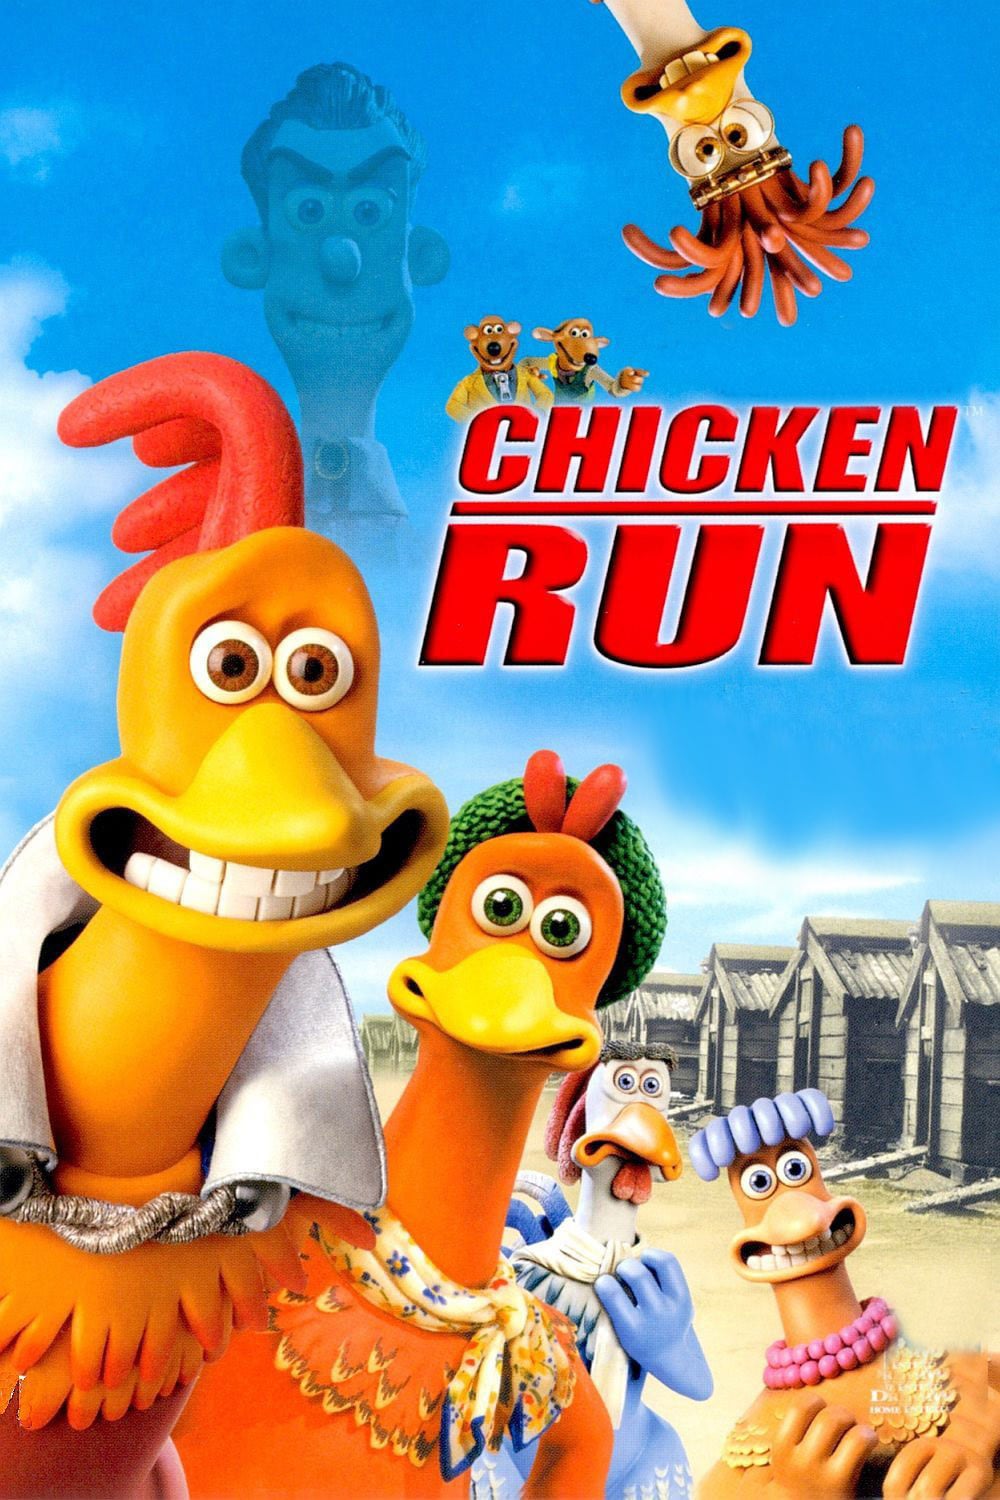 Affiche du film "Chicken run"